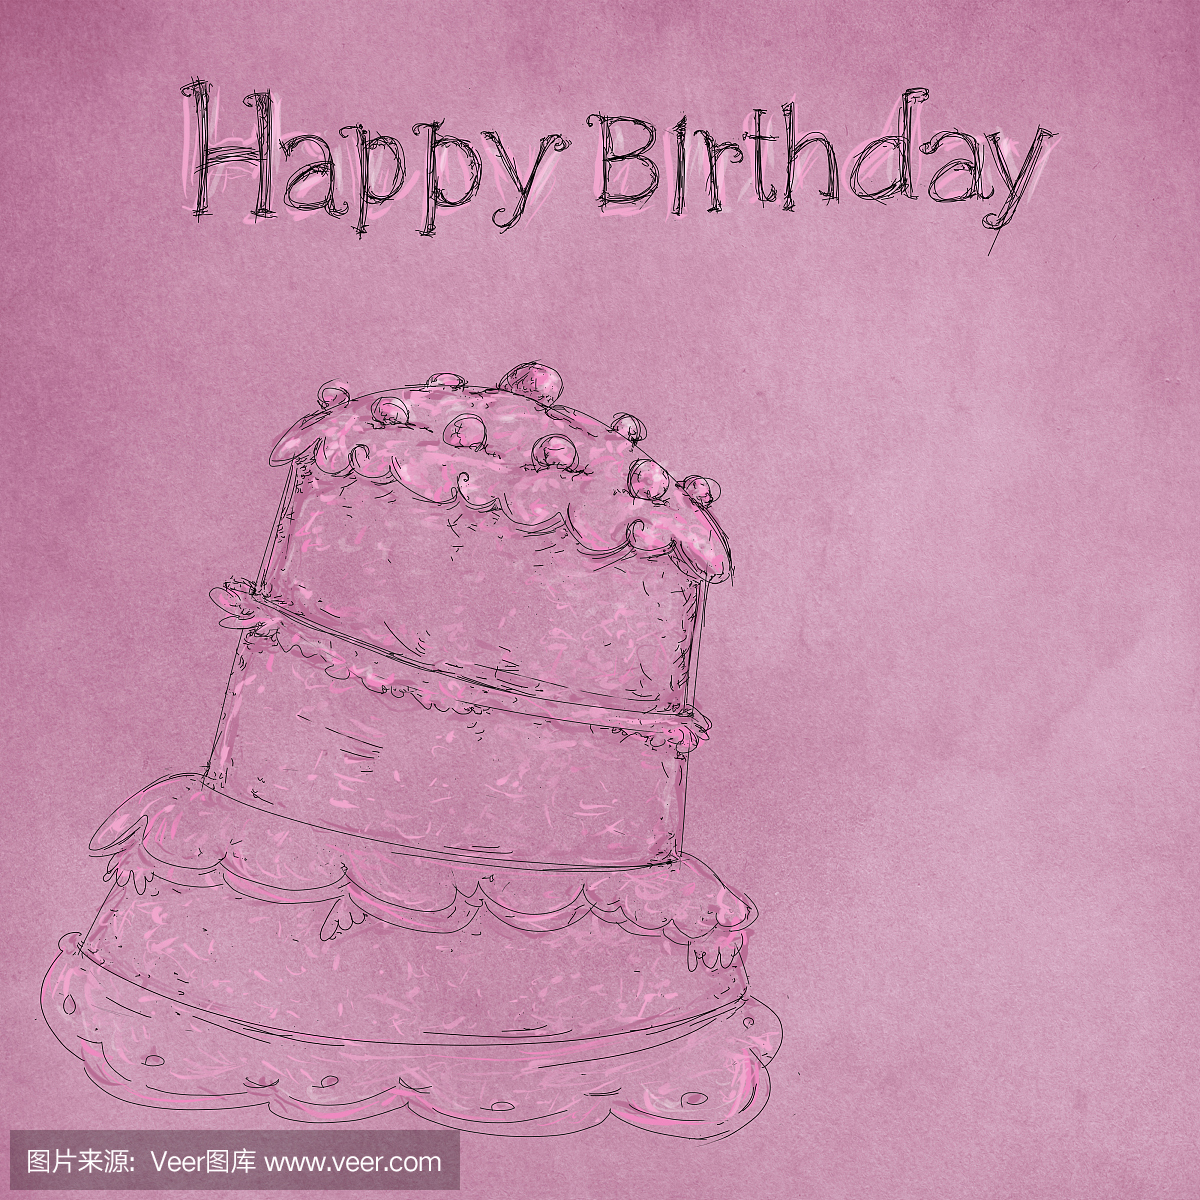 一个蛋糕画在彩色背景与生日写作